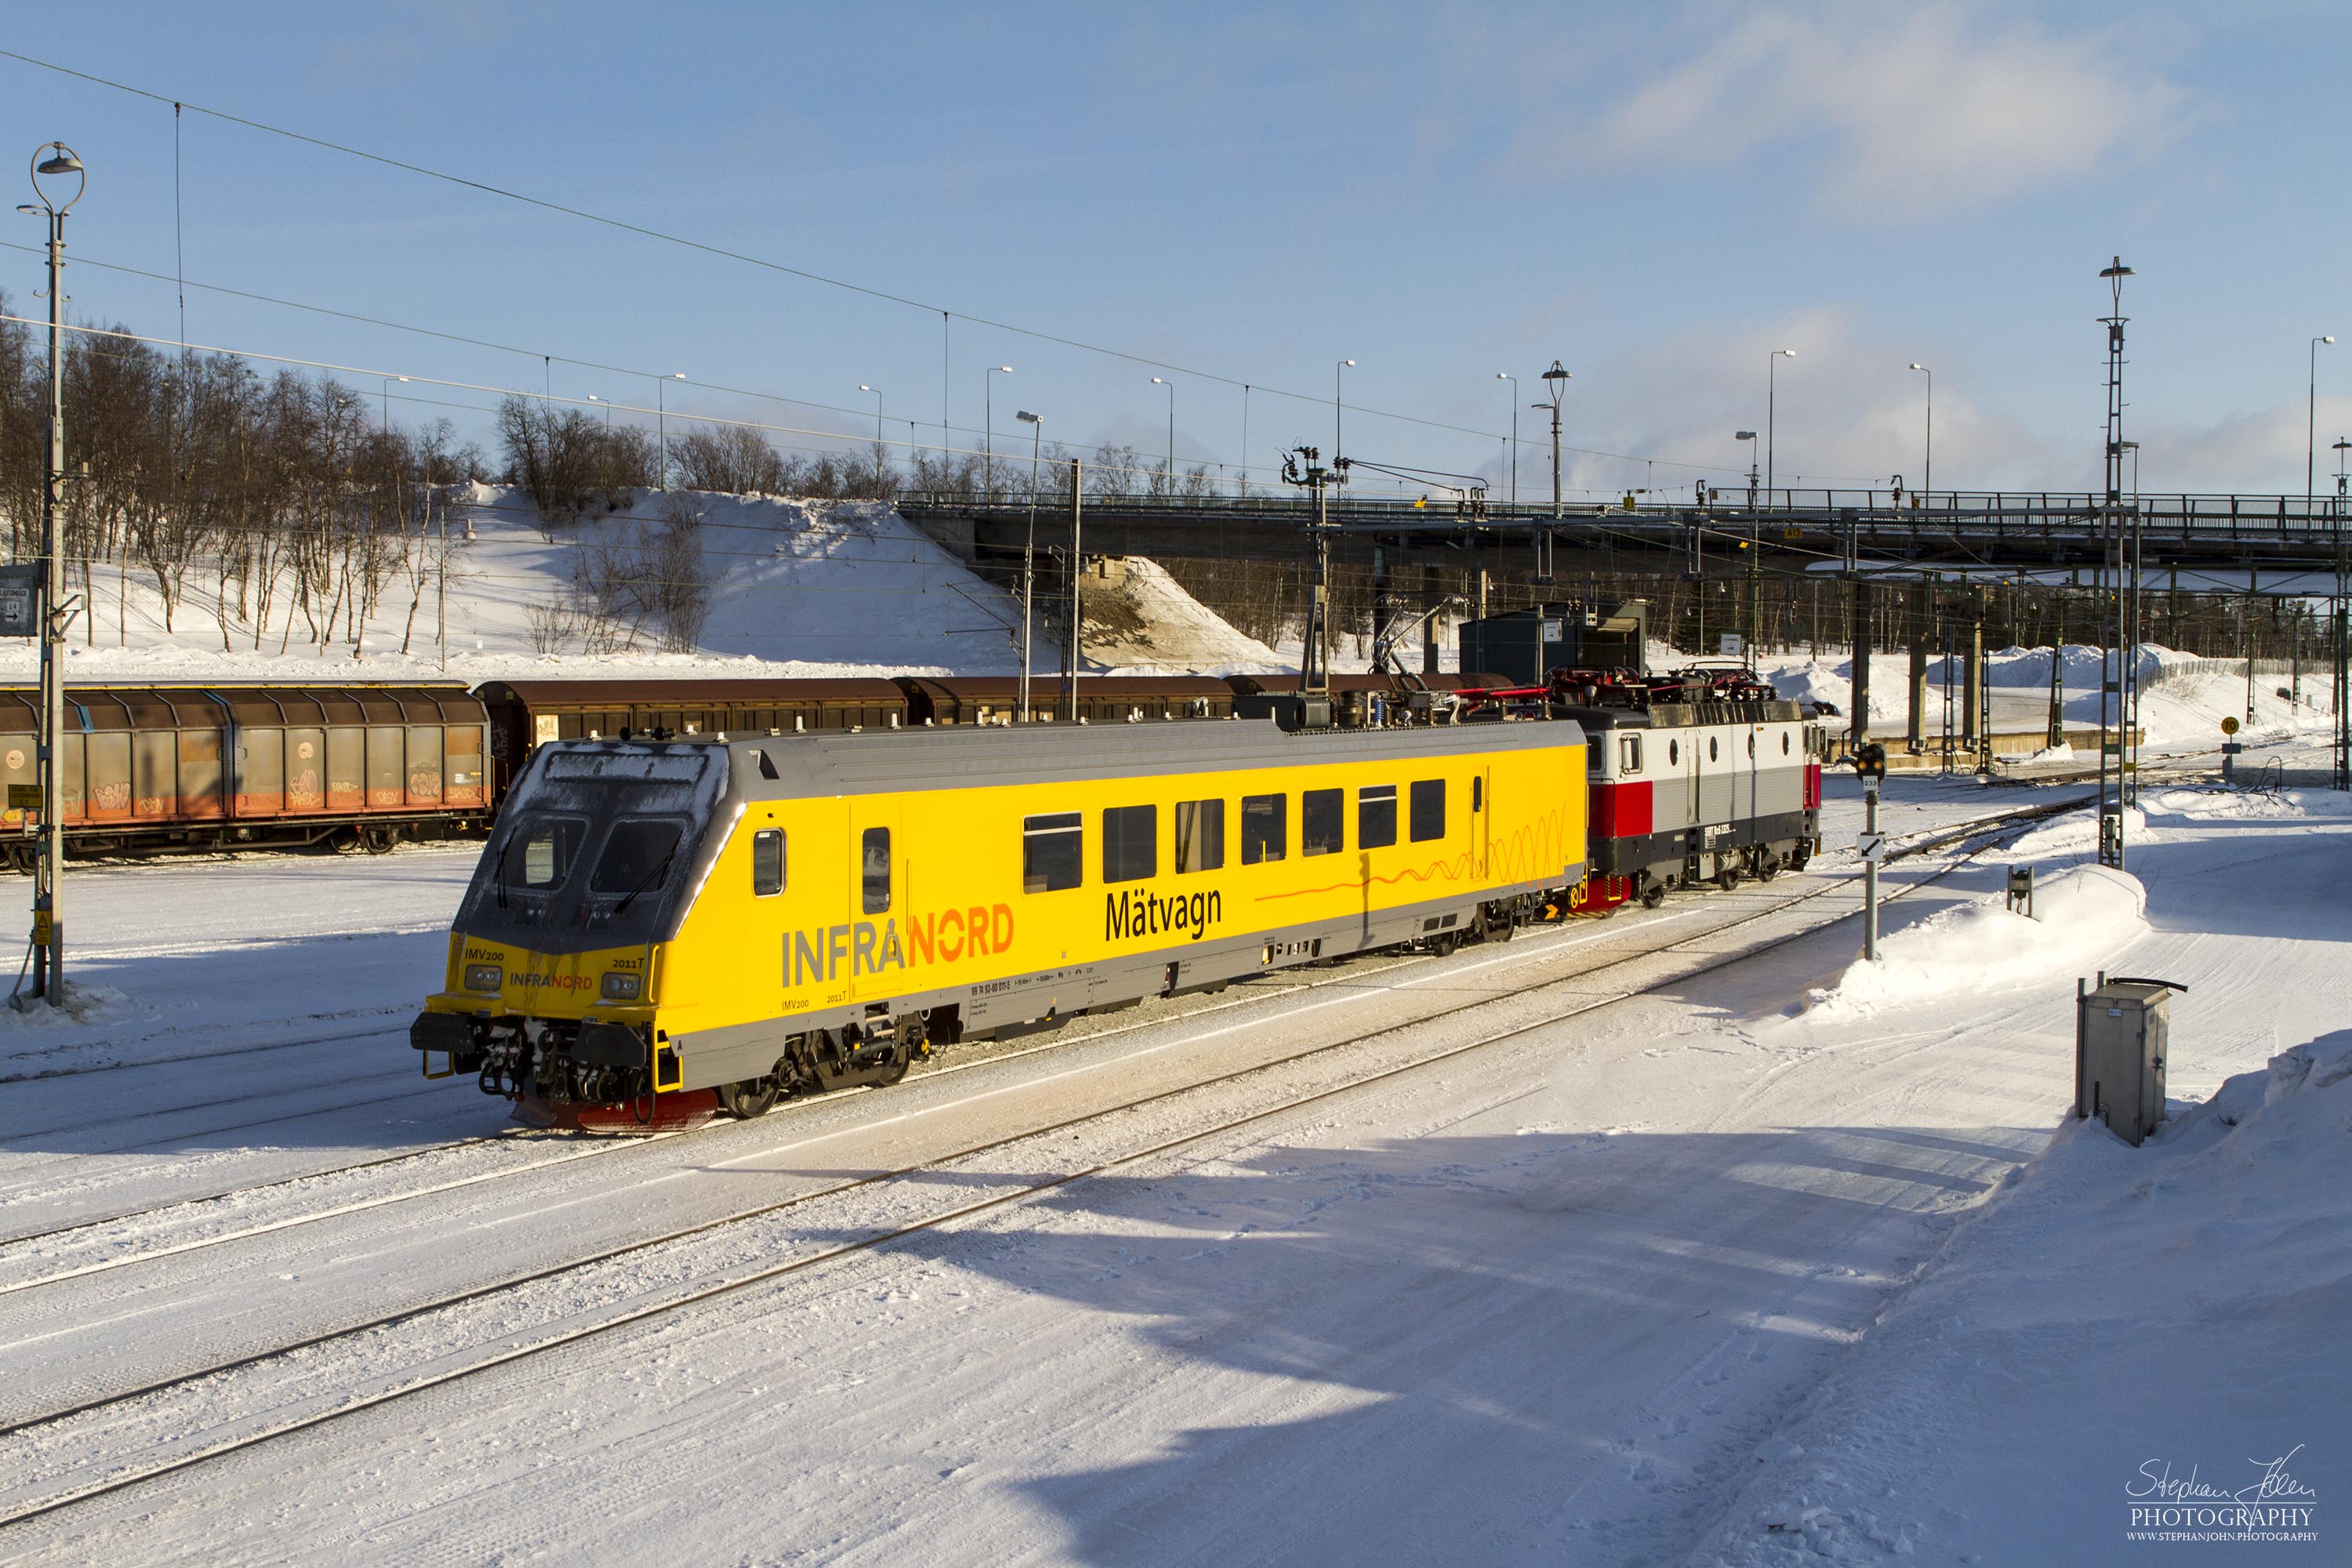 Messzug von InfraNord im Bahnhof Kiruna C